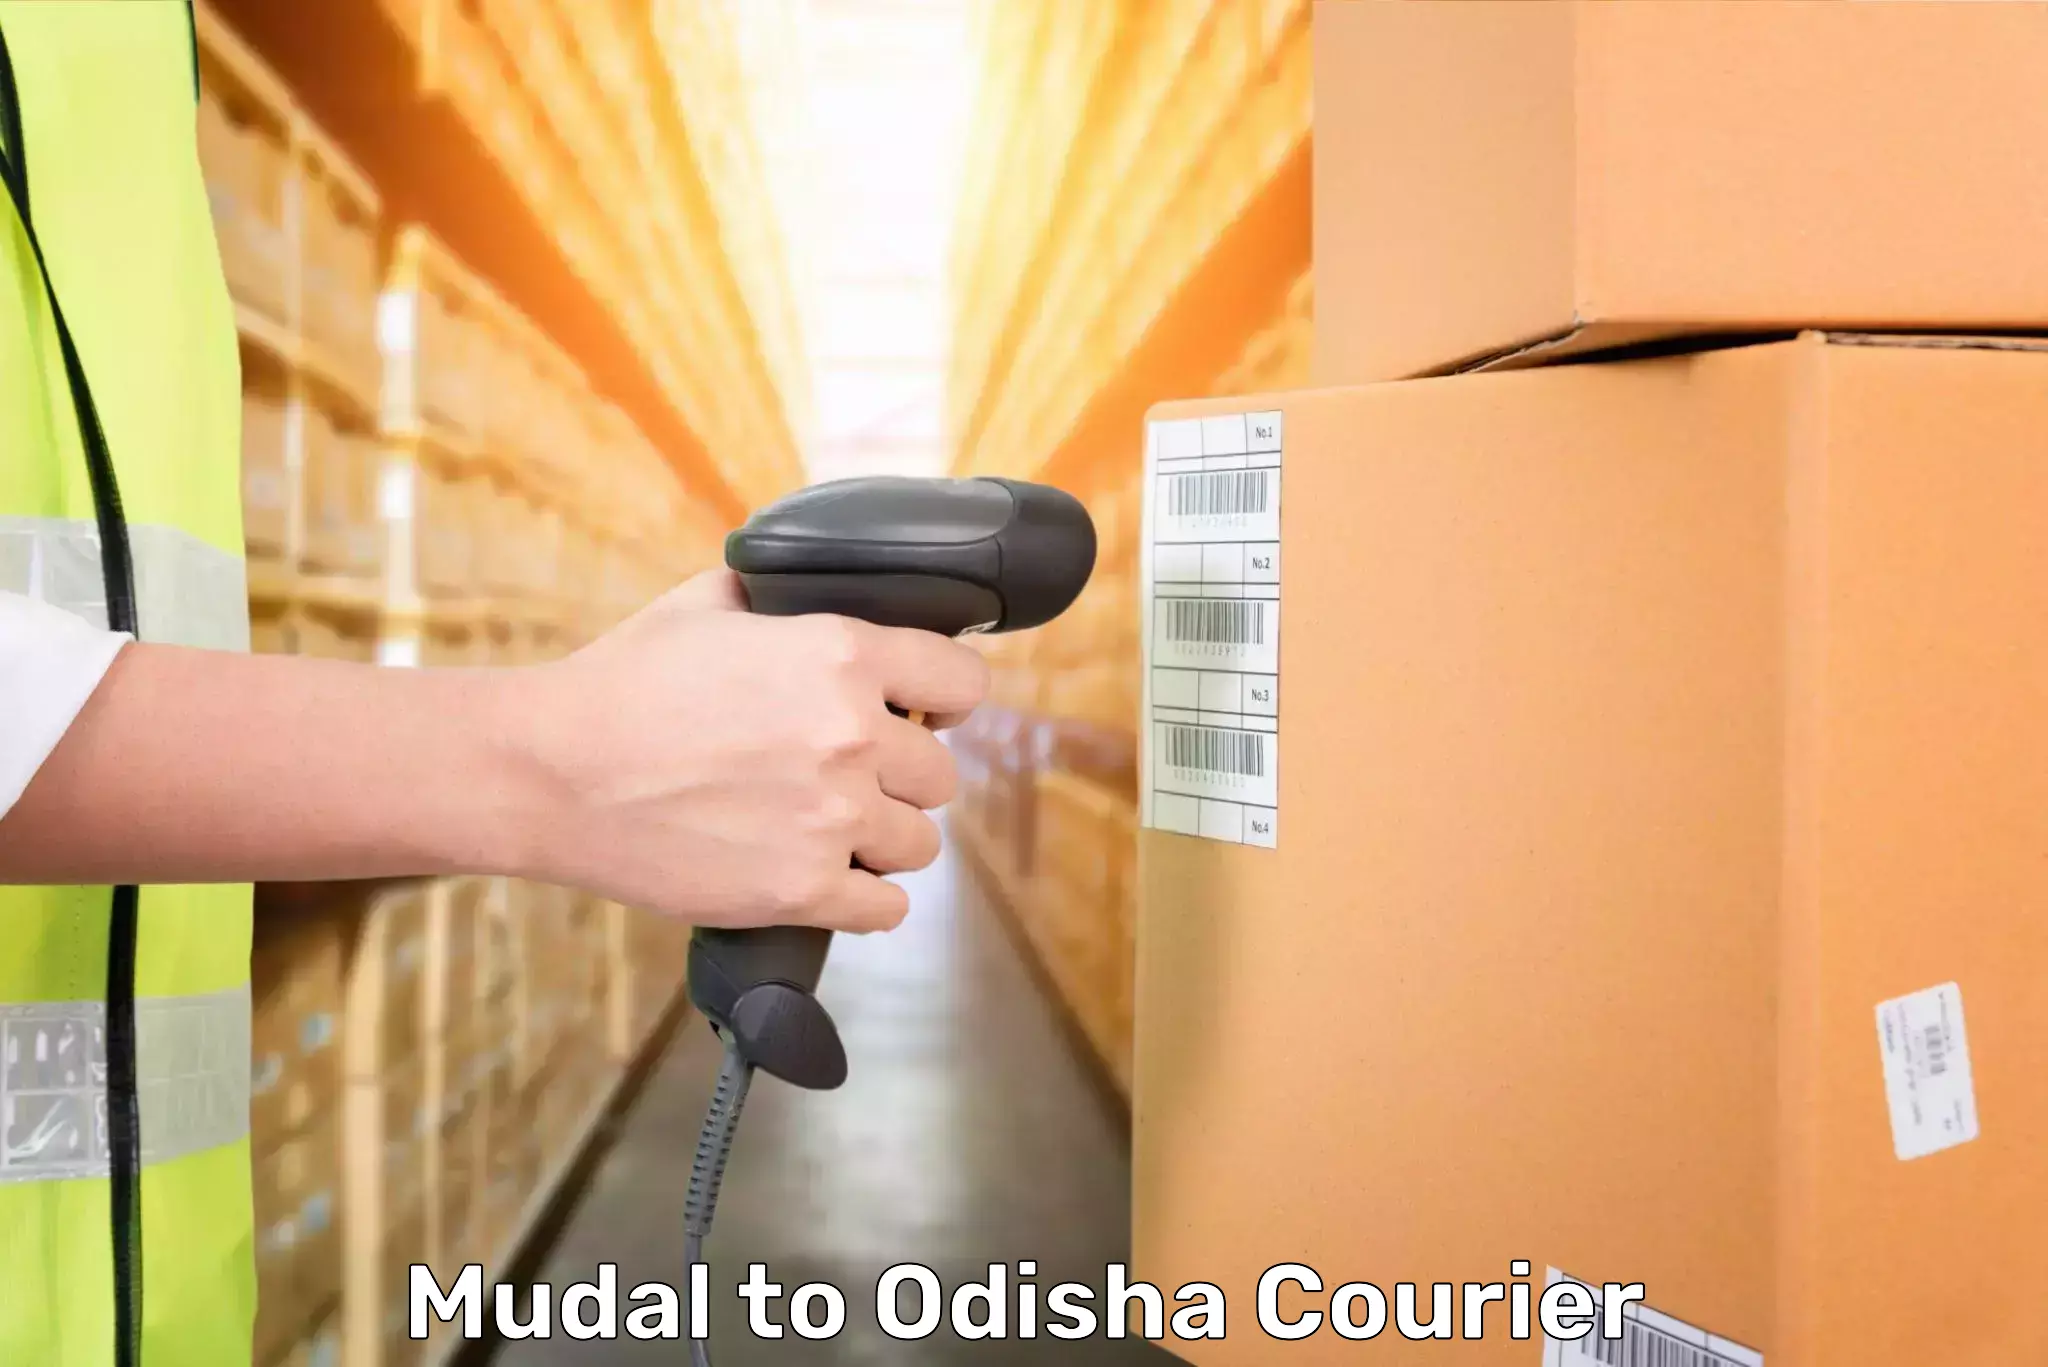 Baggage shipping experts Mudal to Odisha